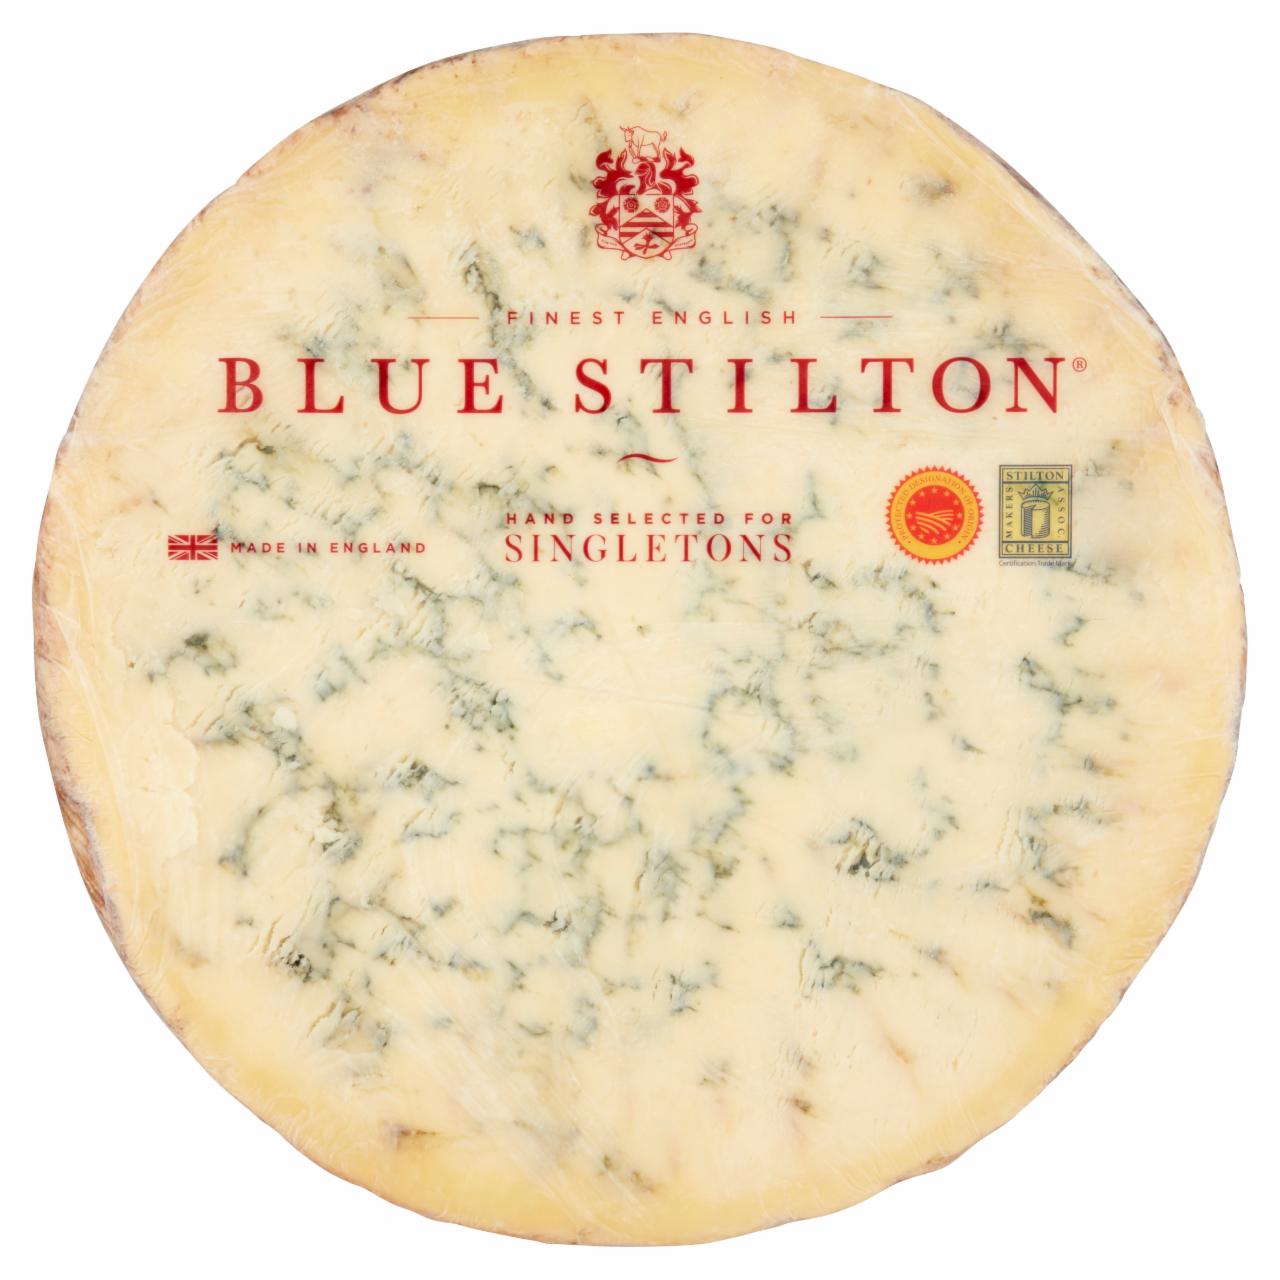 Képek - Blue Stilton kékpenészes, zsíros, félkemény sajt